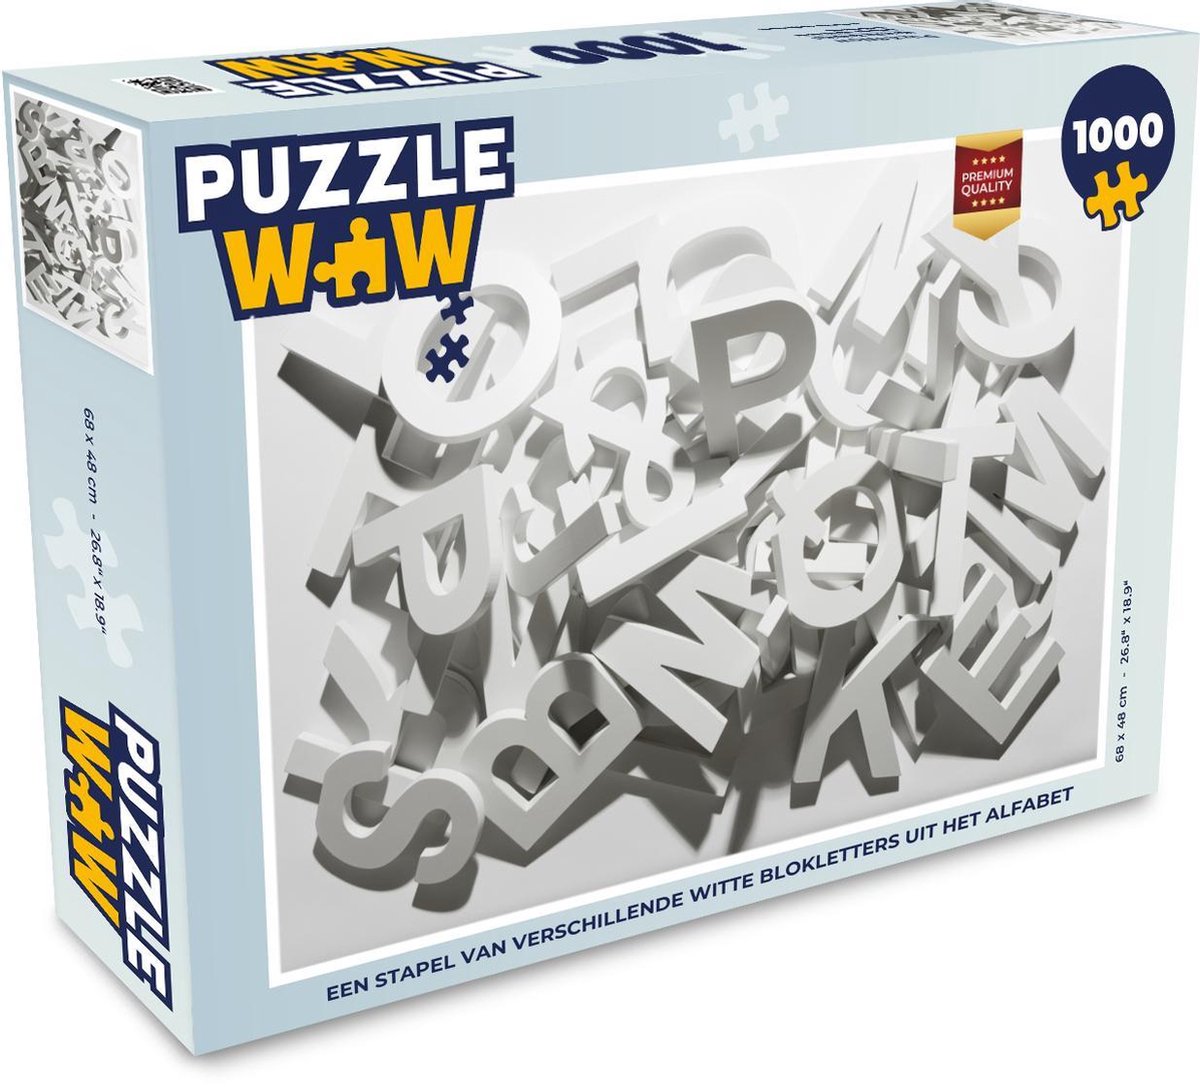 Afbeelding van product Puzzel 1000 stukjes volwassenen Letters 1000 stukjes - Een stapel van verschillende witte blokletters uit het alfabet - PuzzleWow heeft +100000 puzzels